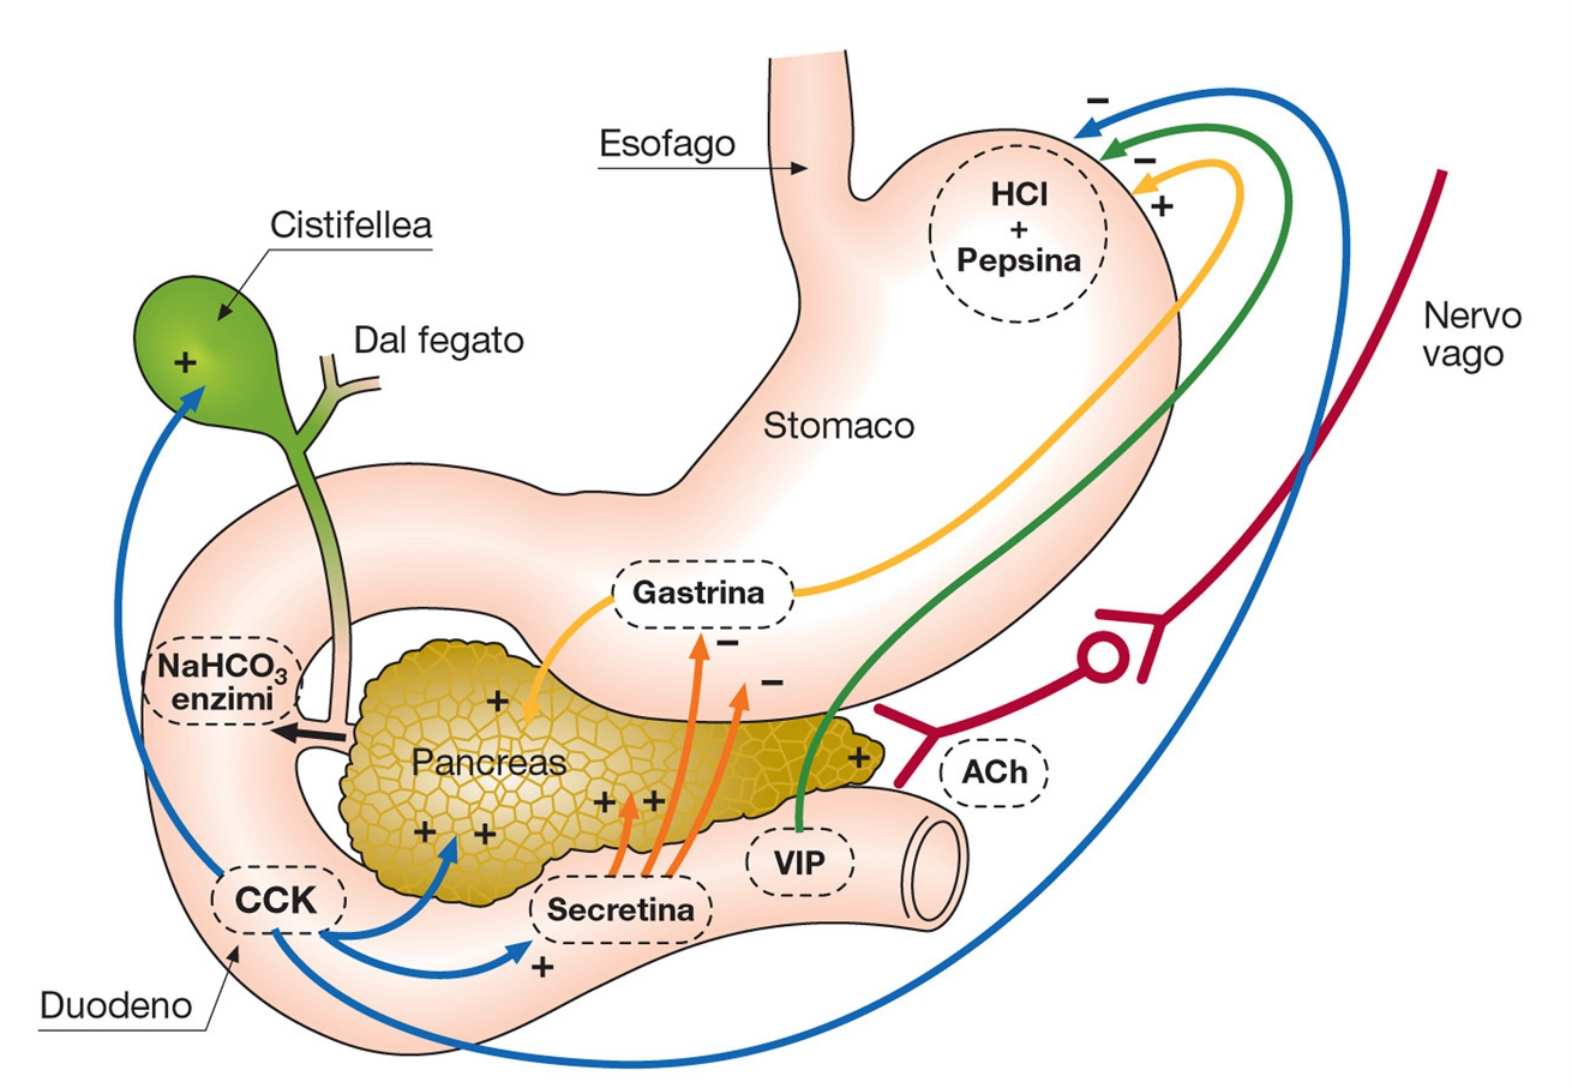 ORMONI GASTROINTESTINALI E REGOLAZIONE DEL SUCCO PANCREATICO ormonet gastrointestinal